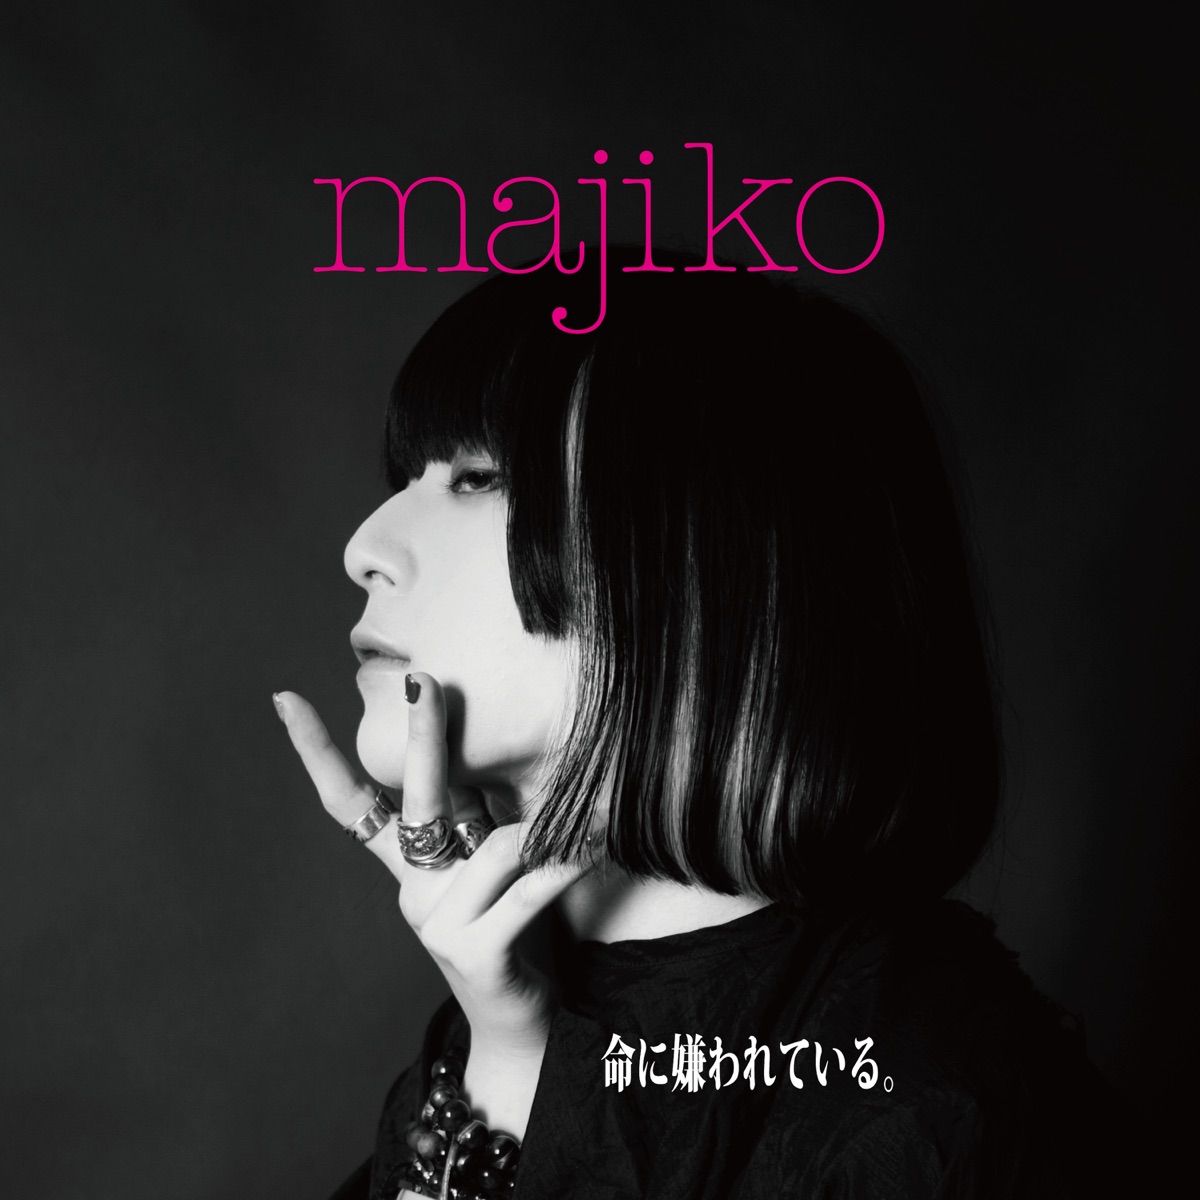 Cover art for『majiko - Inochi ni Kirawareteiru』from the release『Inochi ni Kirawareteiru』